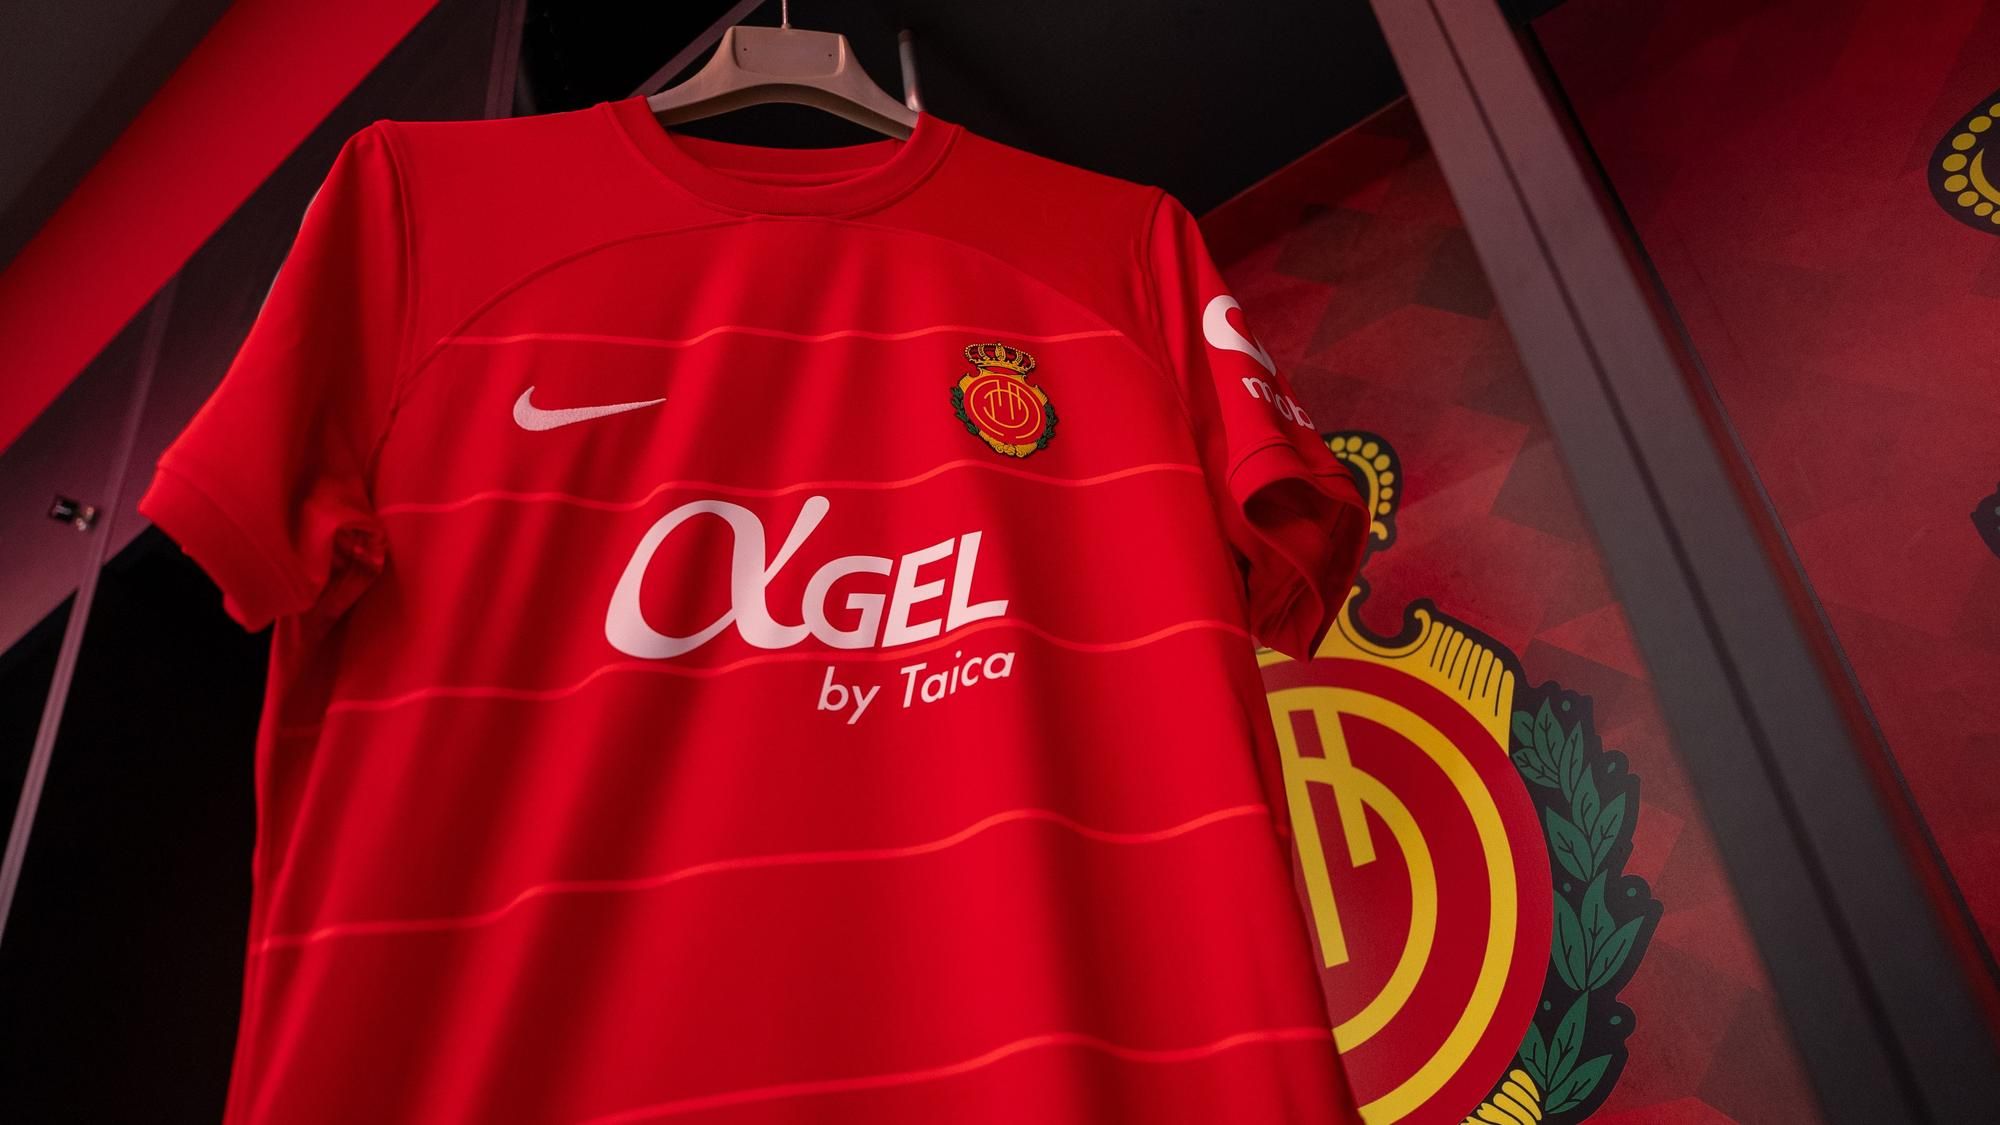 Confirmada: Así es la nueva camiseta y segunda equipación del Real Madrid  2019-2020